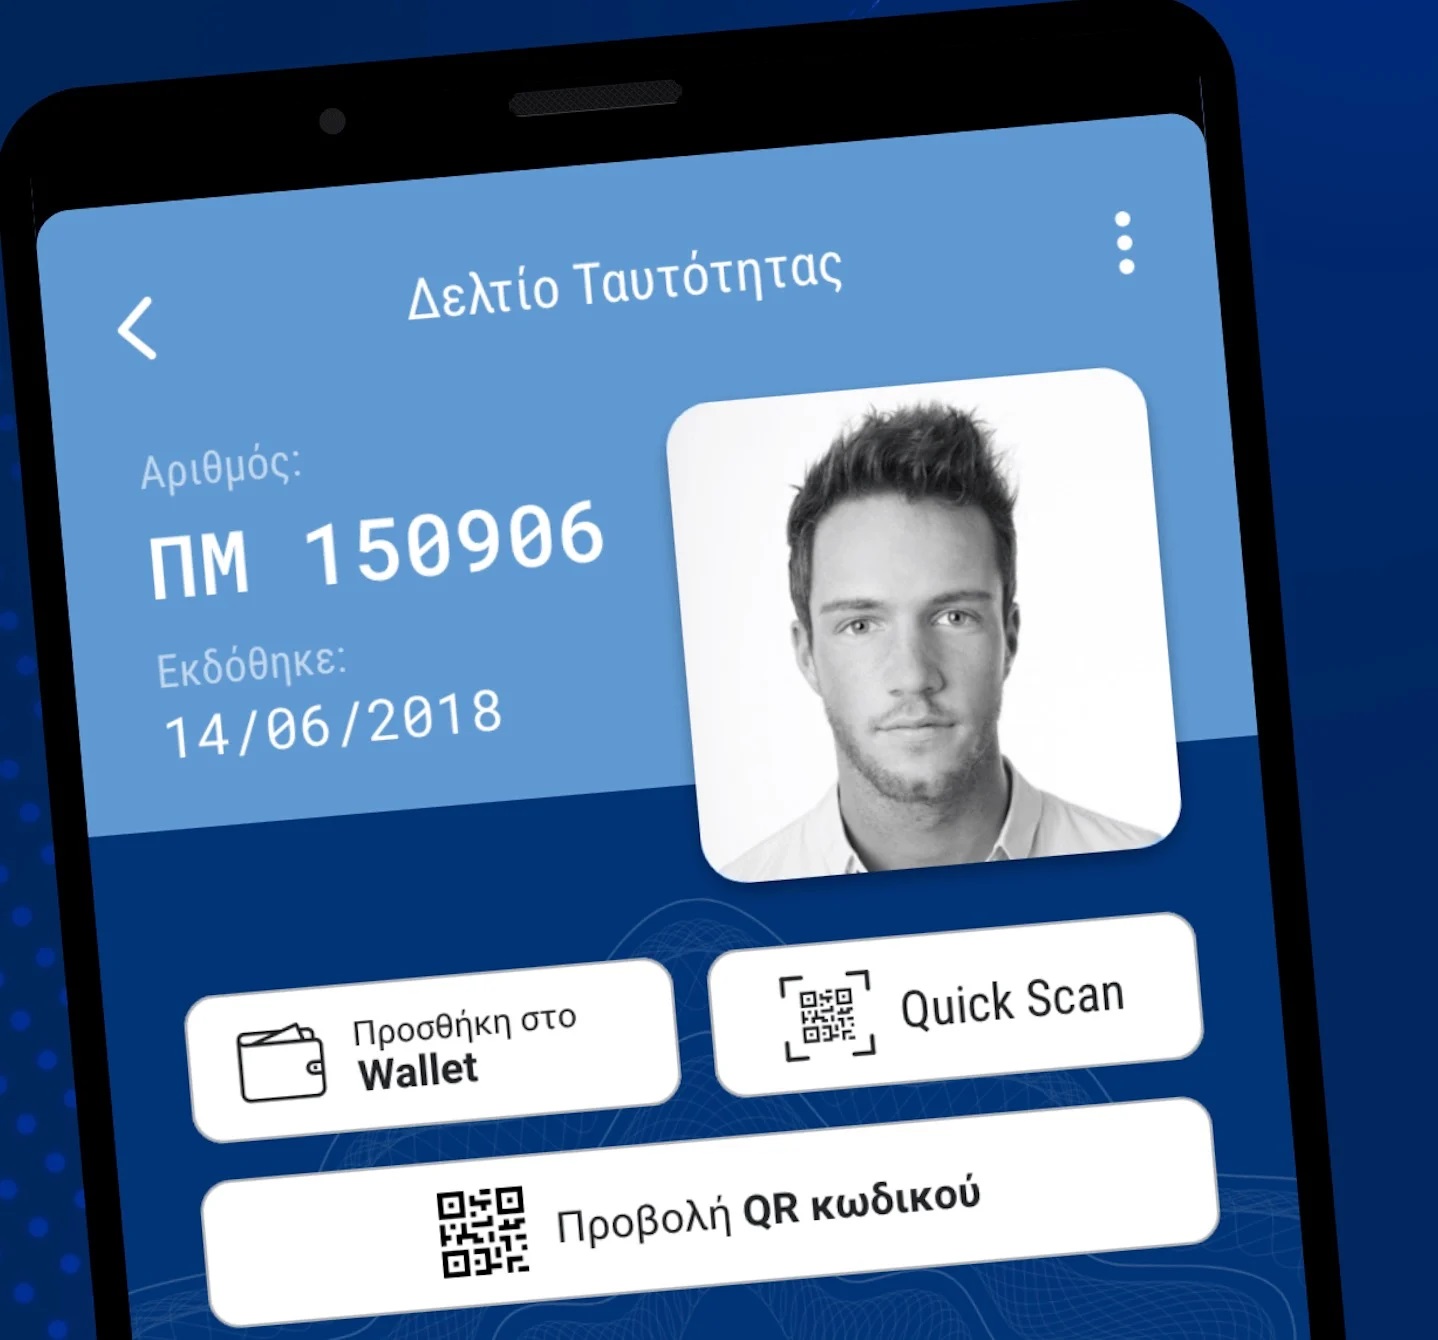 More information about "Διαθέσιμο το gov.gr Wallet για ταυτότητα και άδεια οδήγησης στο smartphone"